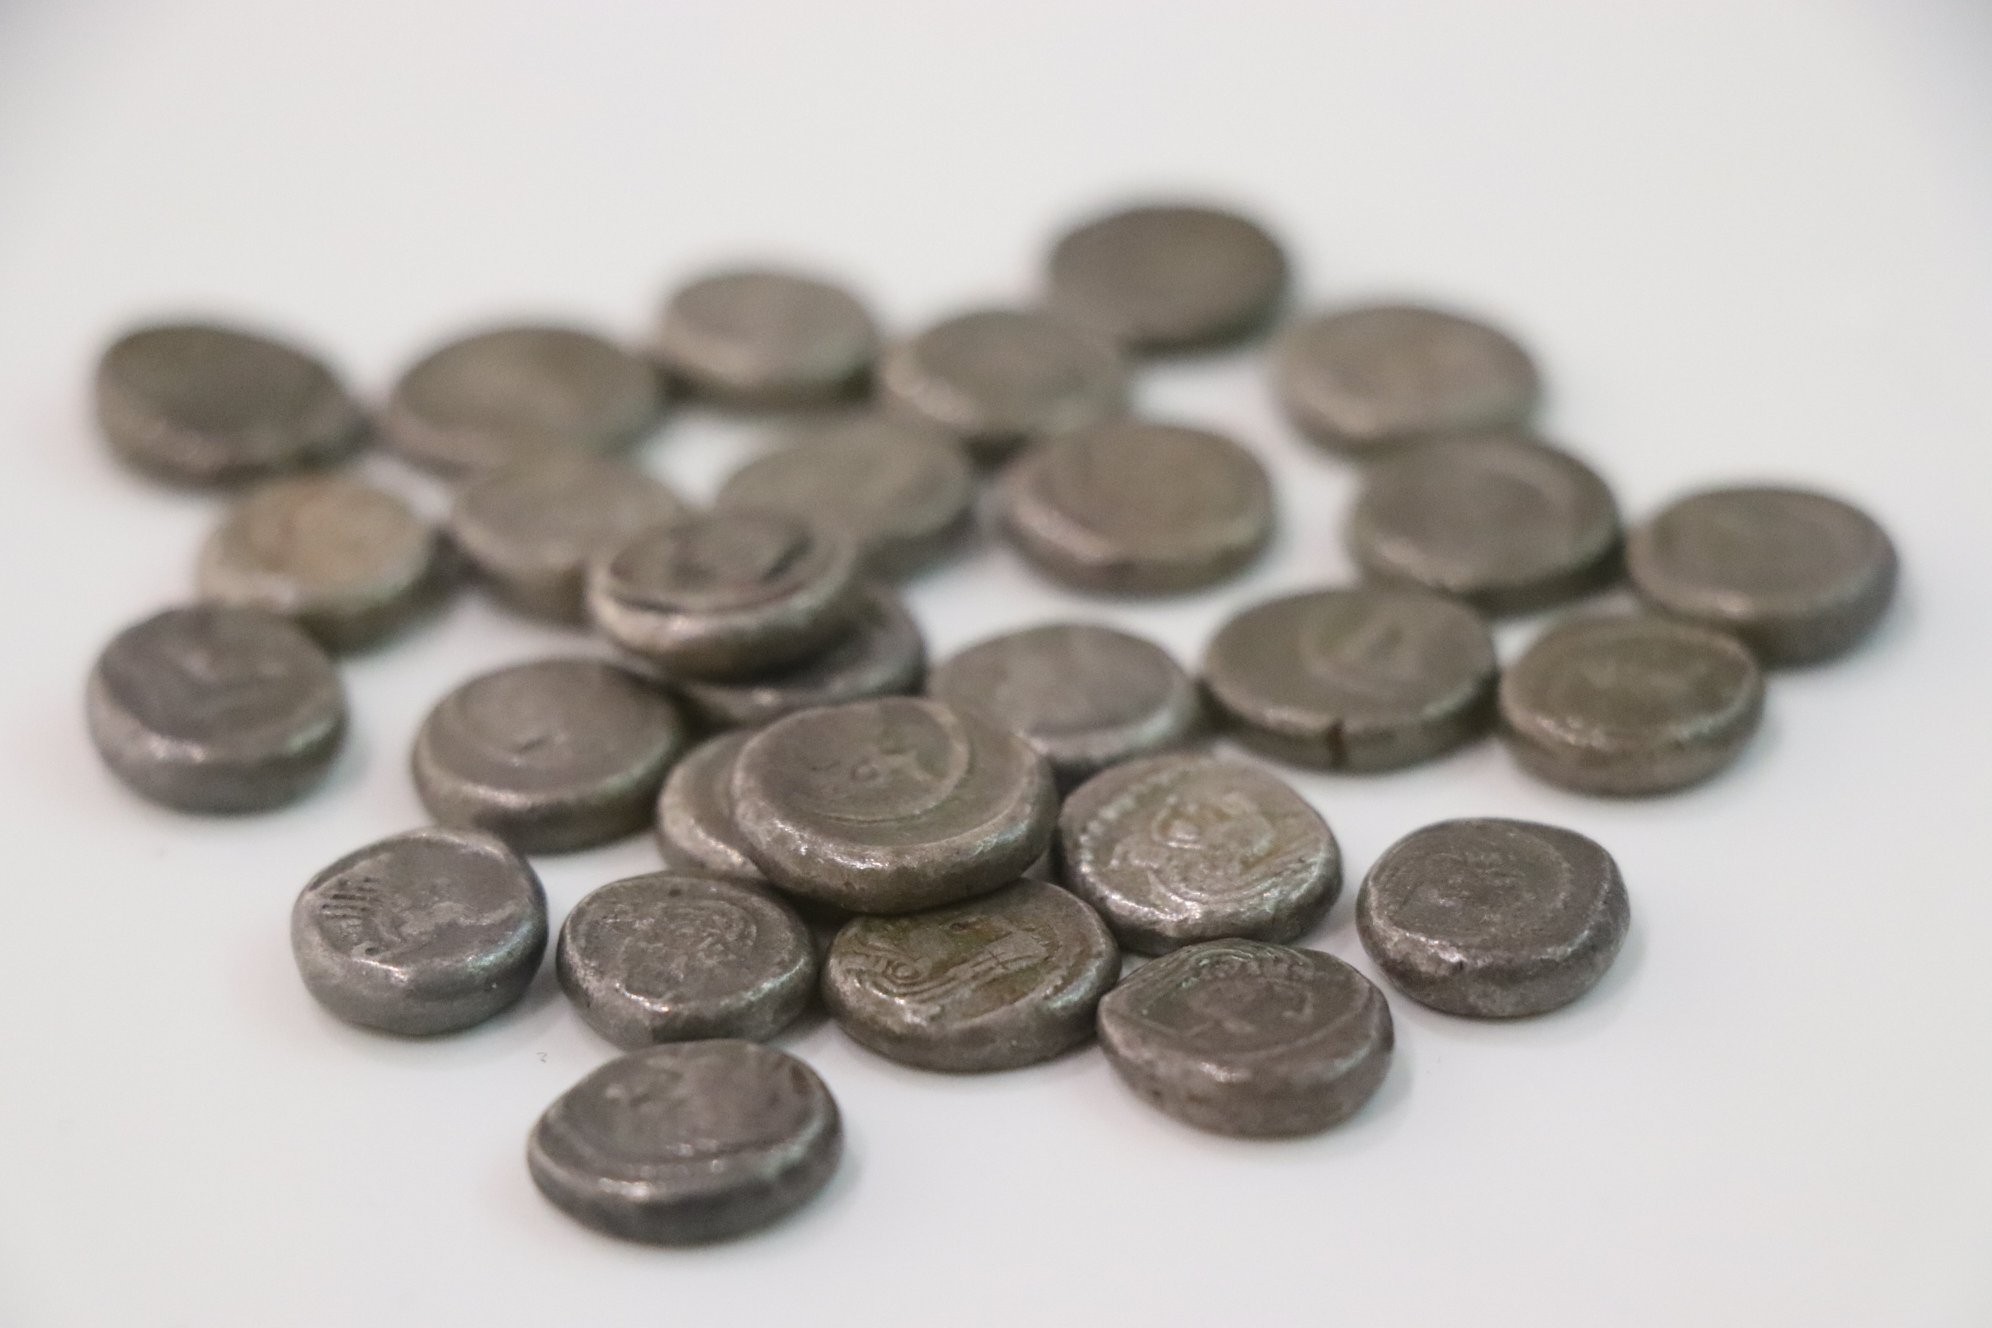 ნახევარდრაქმა. ძვ. წ. V-III სს. კოლხეთი. ვერცხლი
<br>

სარგის კაკაბაძის საოჯახო არქივიდან

<br>
Half-drachm. 5th-3rd centuries BC. Colchis. Silver